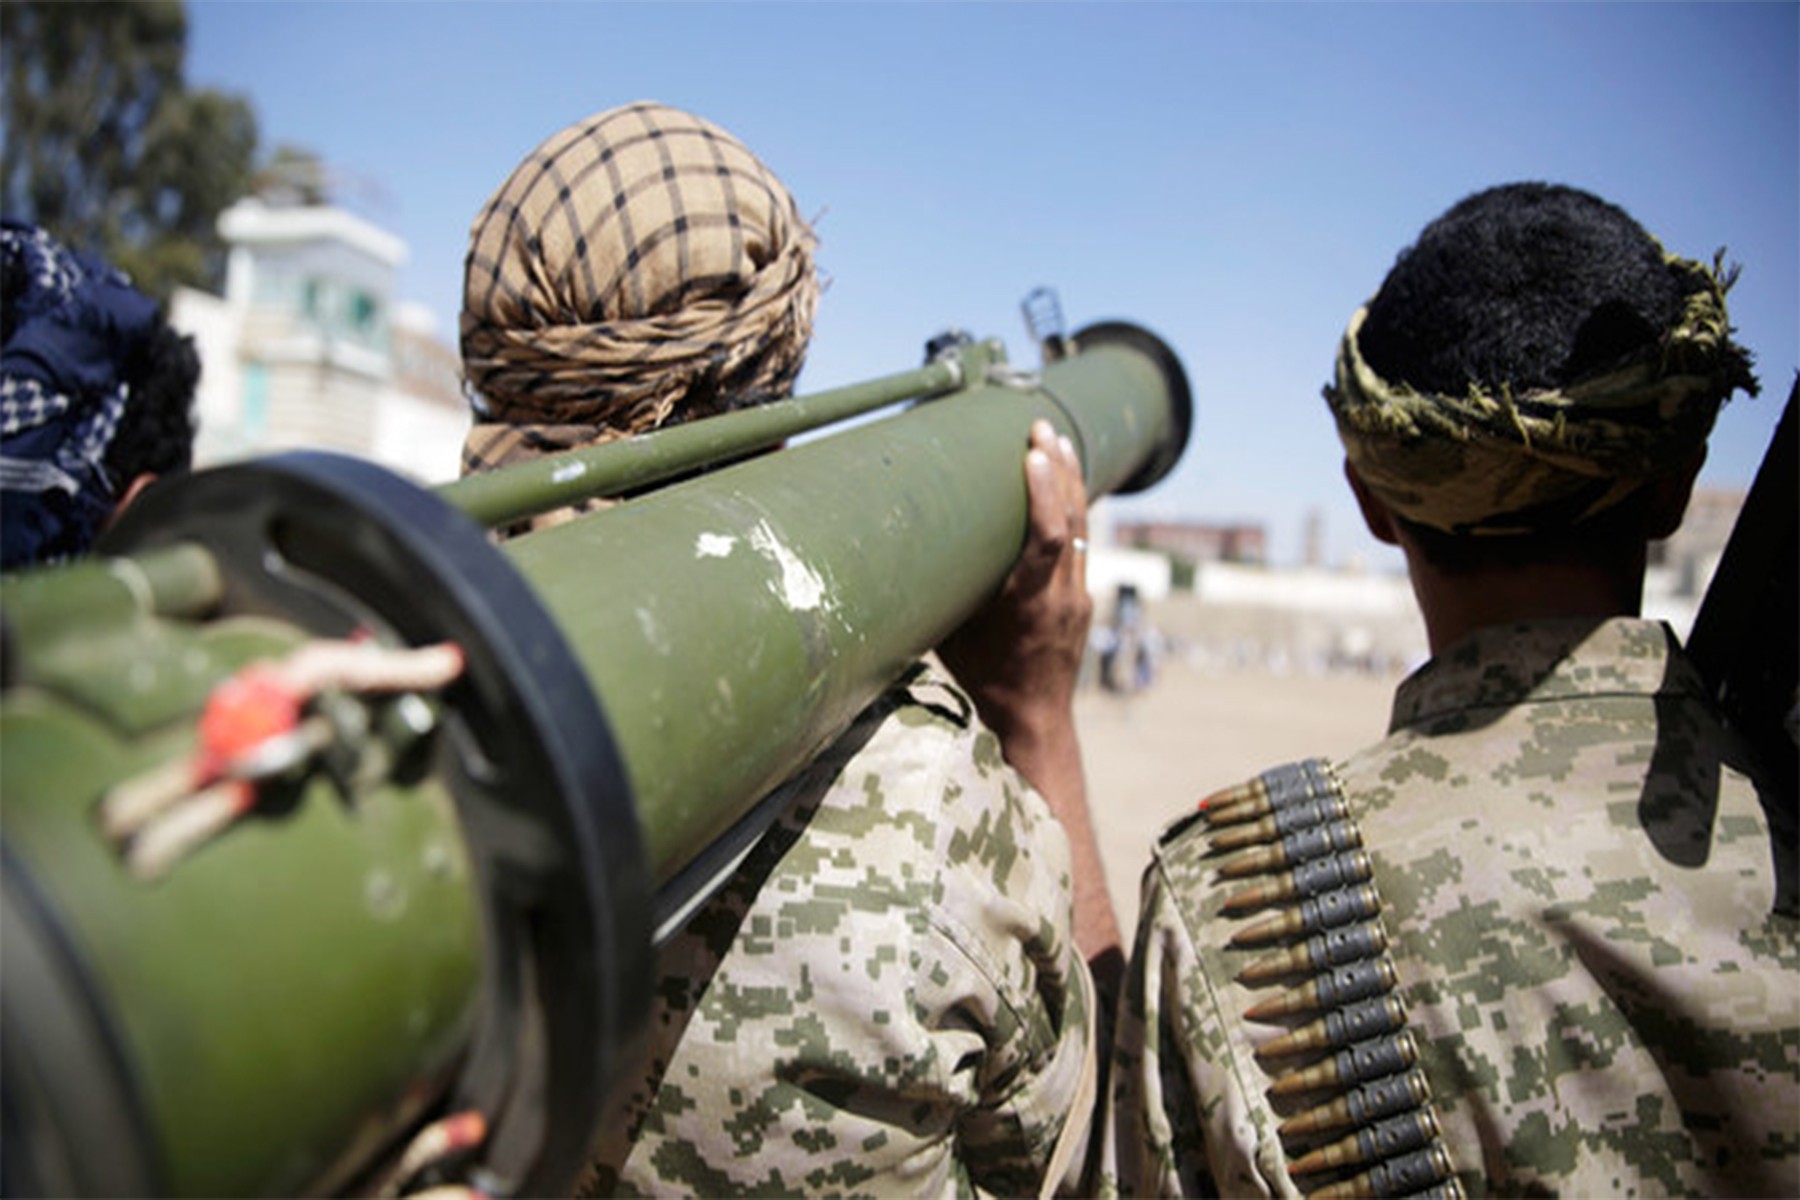 حمله شورشیان حوثی یمن یک کشتی را در دریای سرخ هدف قرار داد